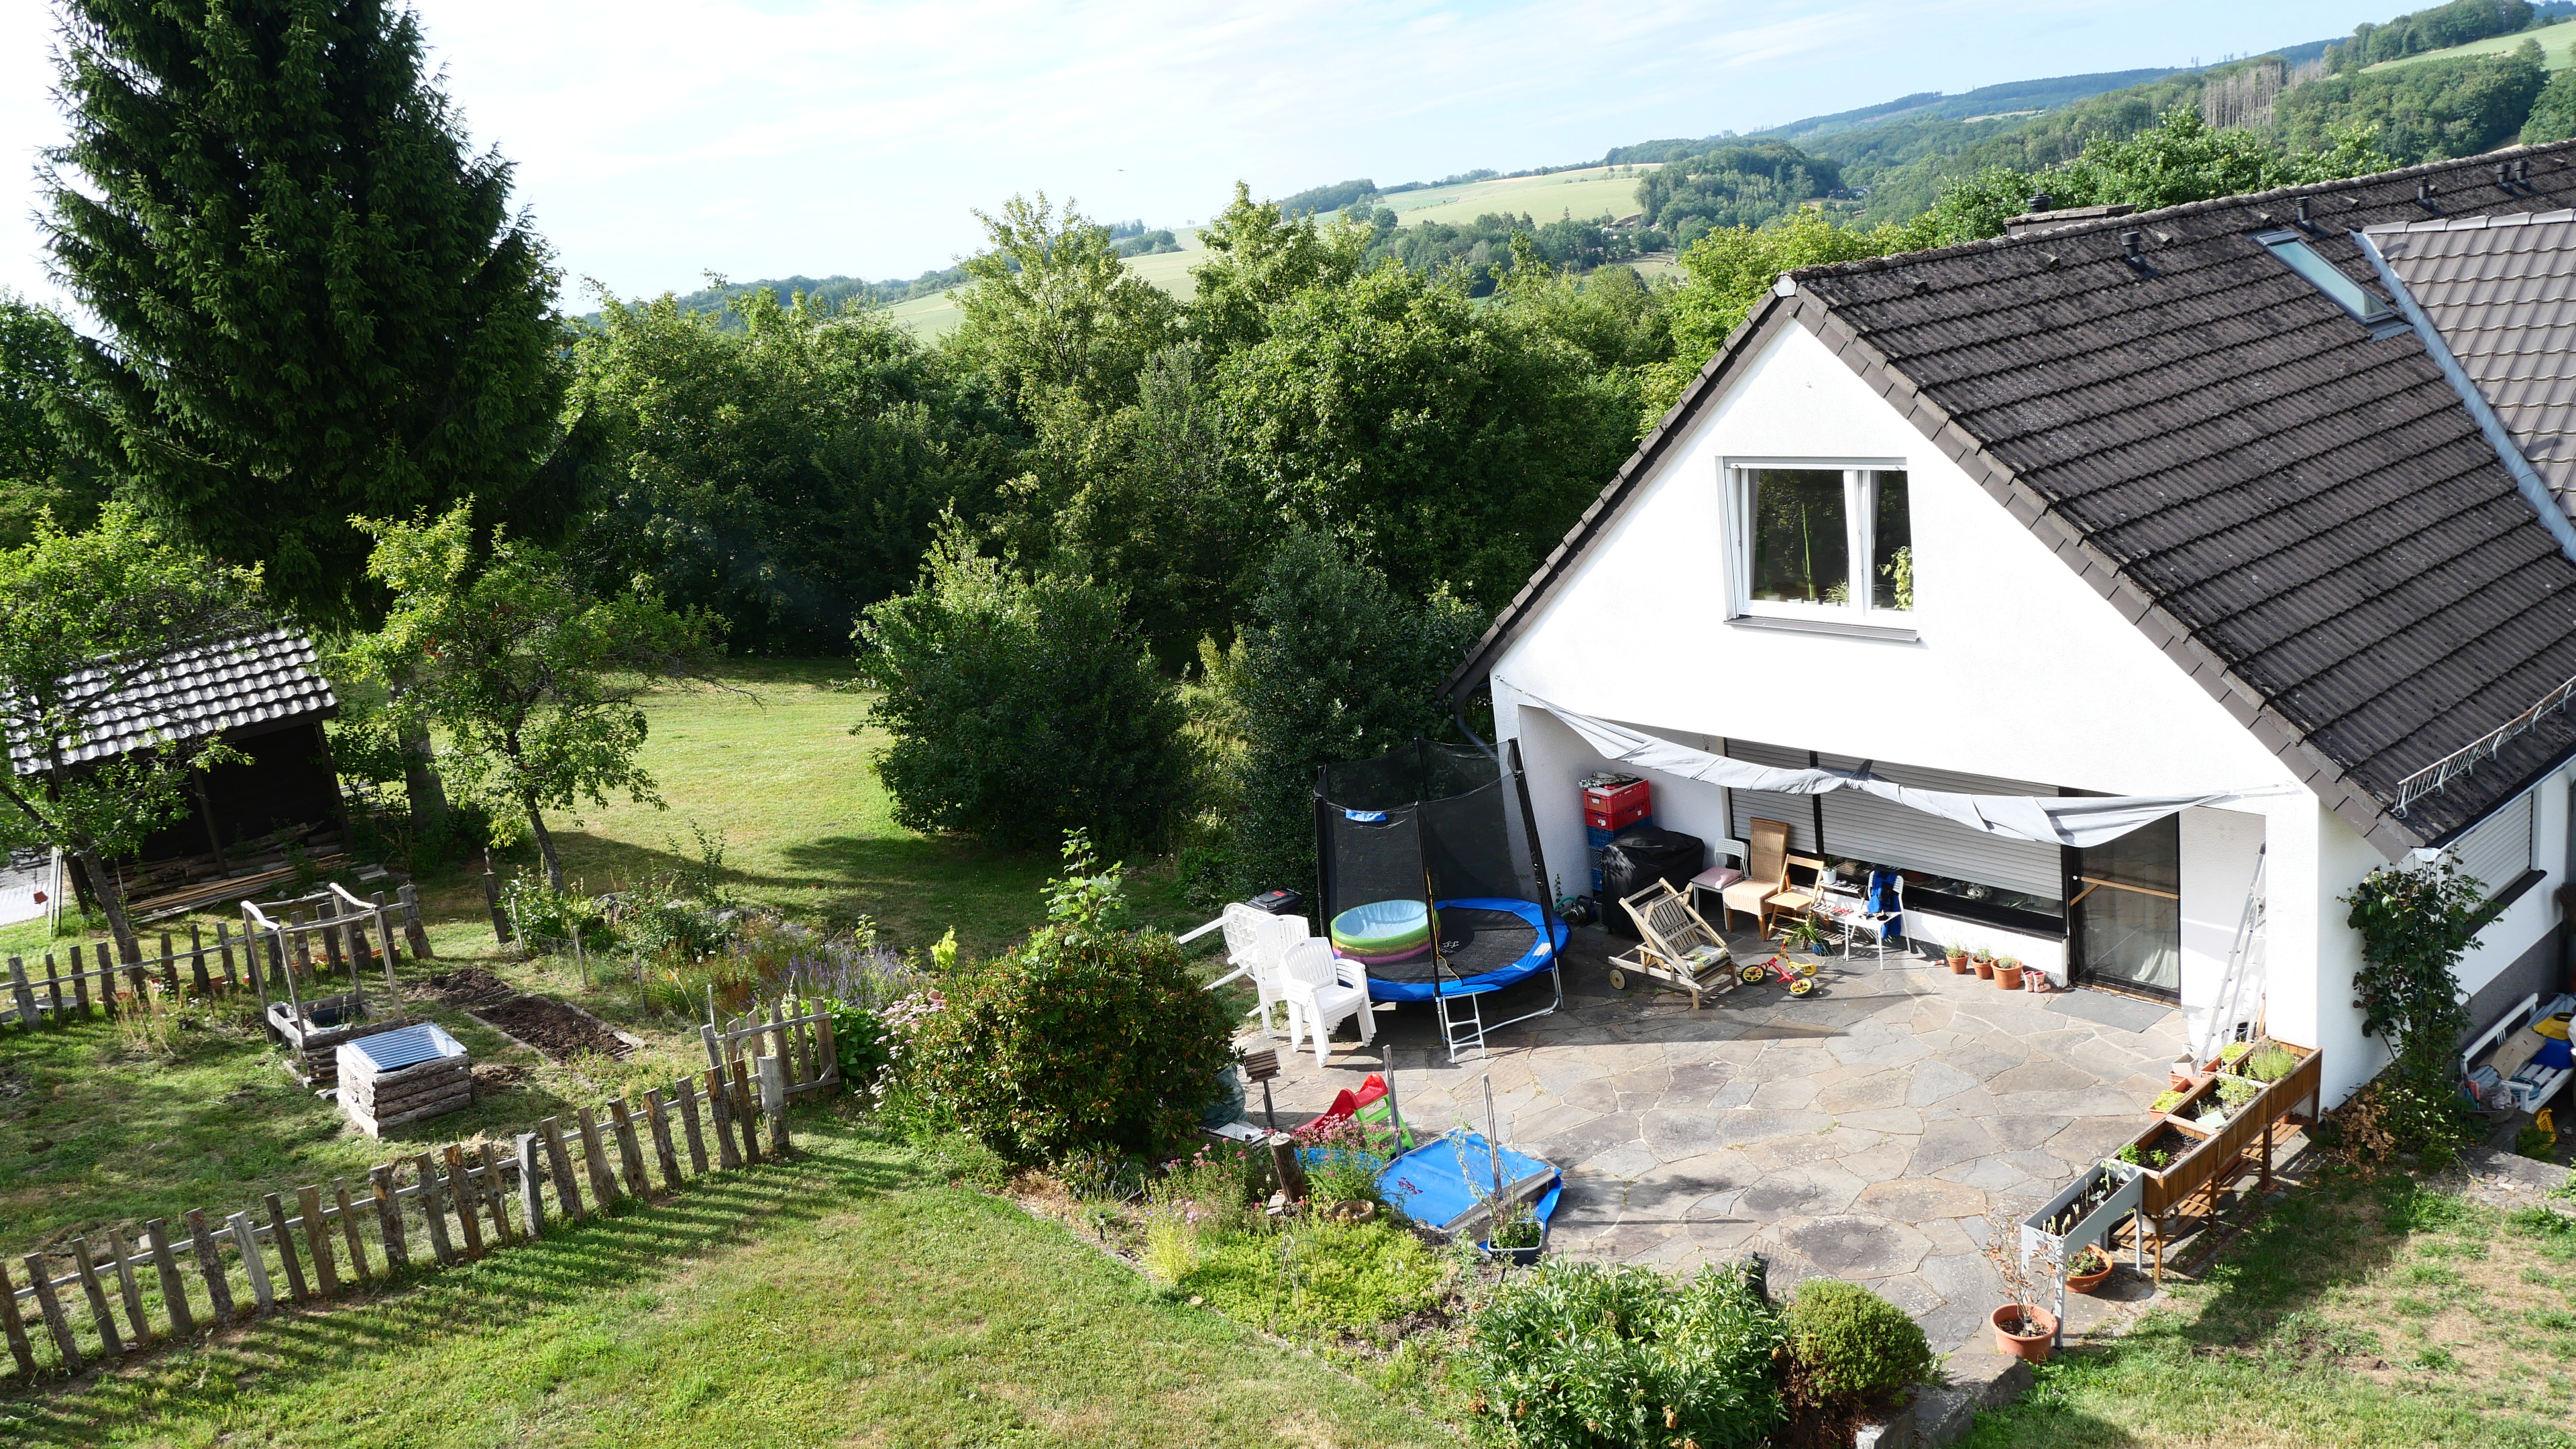 Reichshof-Wildbergerhütte: Wohnhaus mit 3 Wohneinheiten und 4 Garagen, ...eine schöne, große Terrasse hat